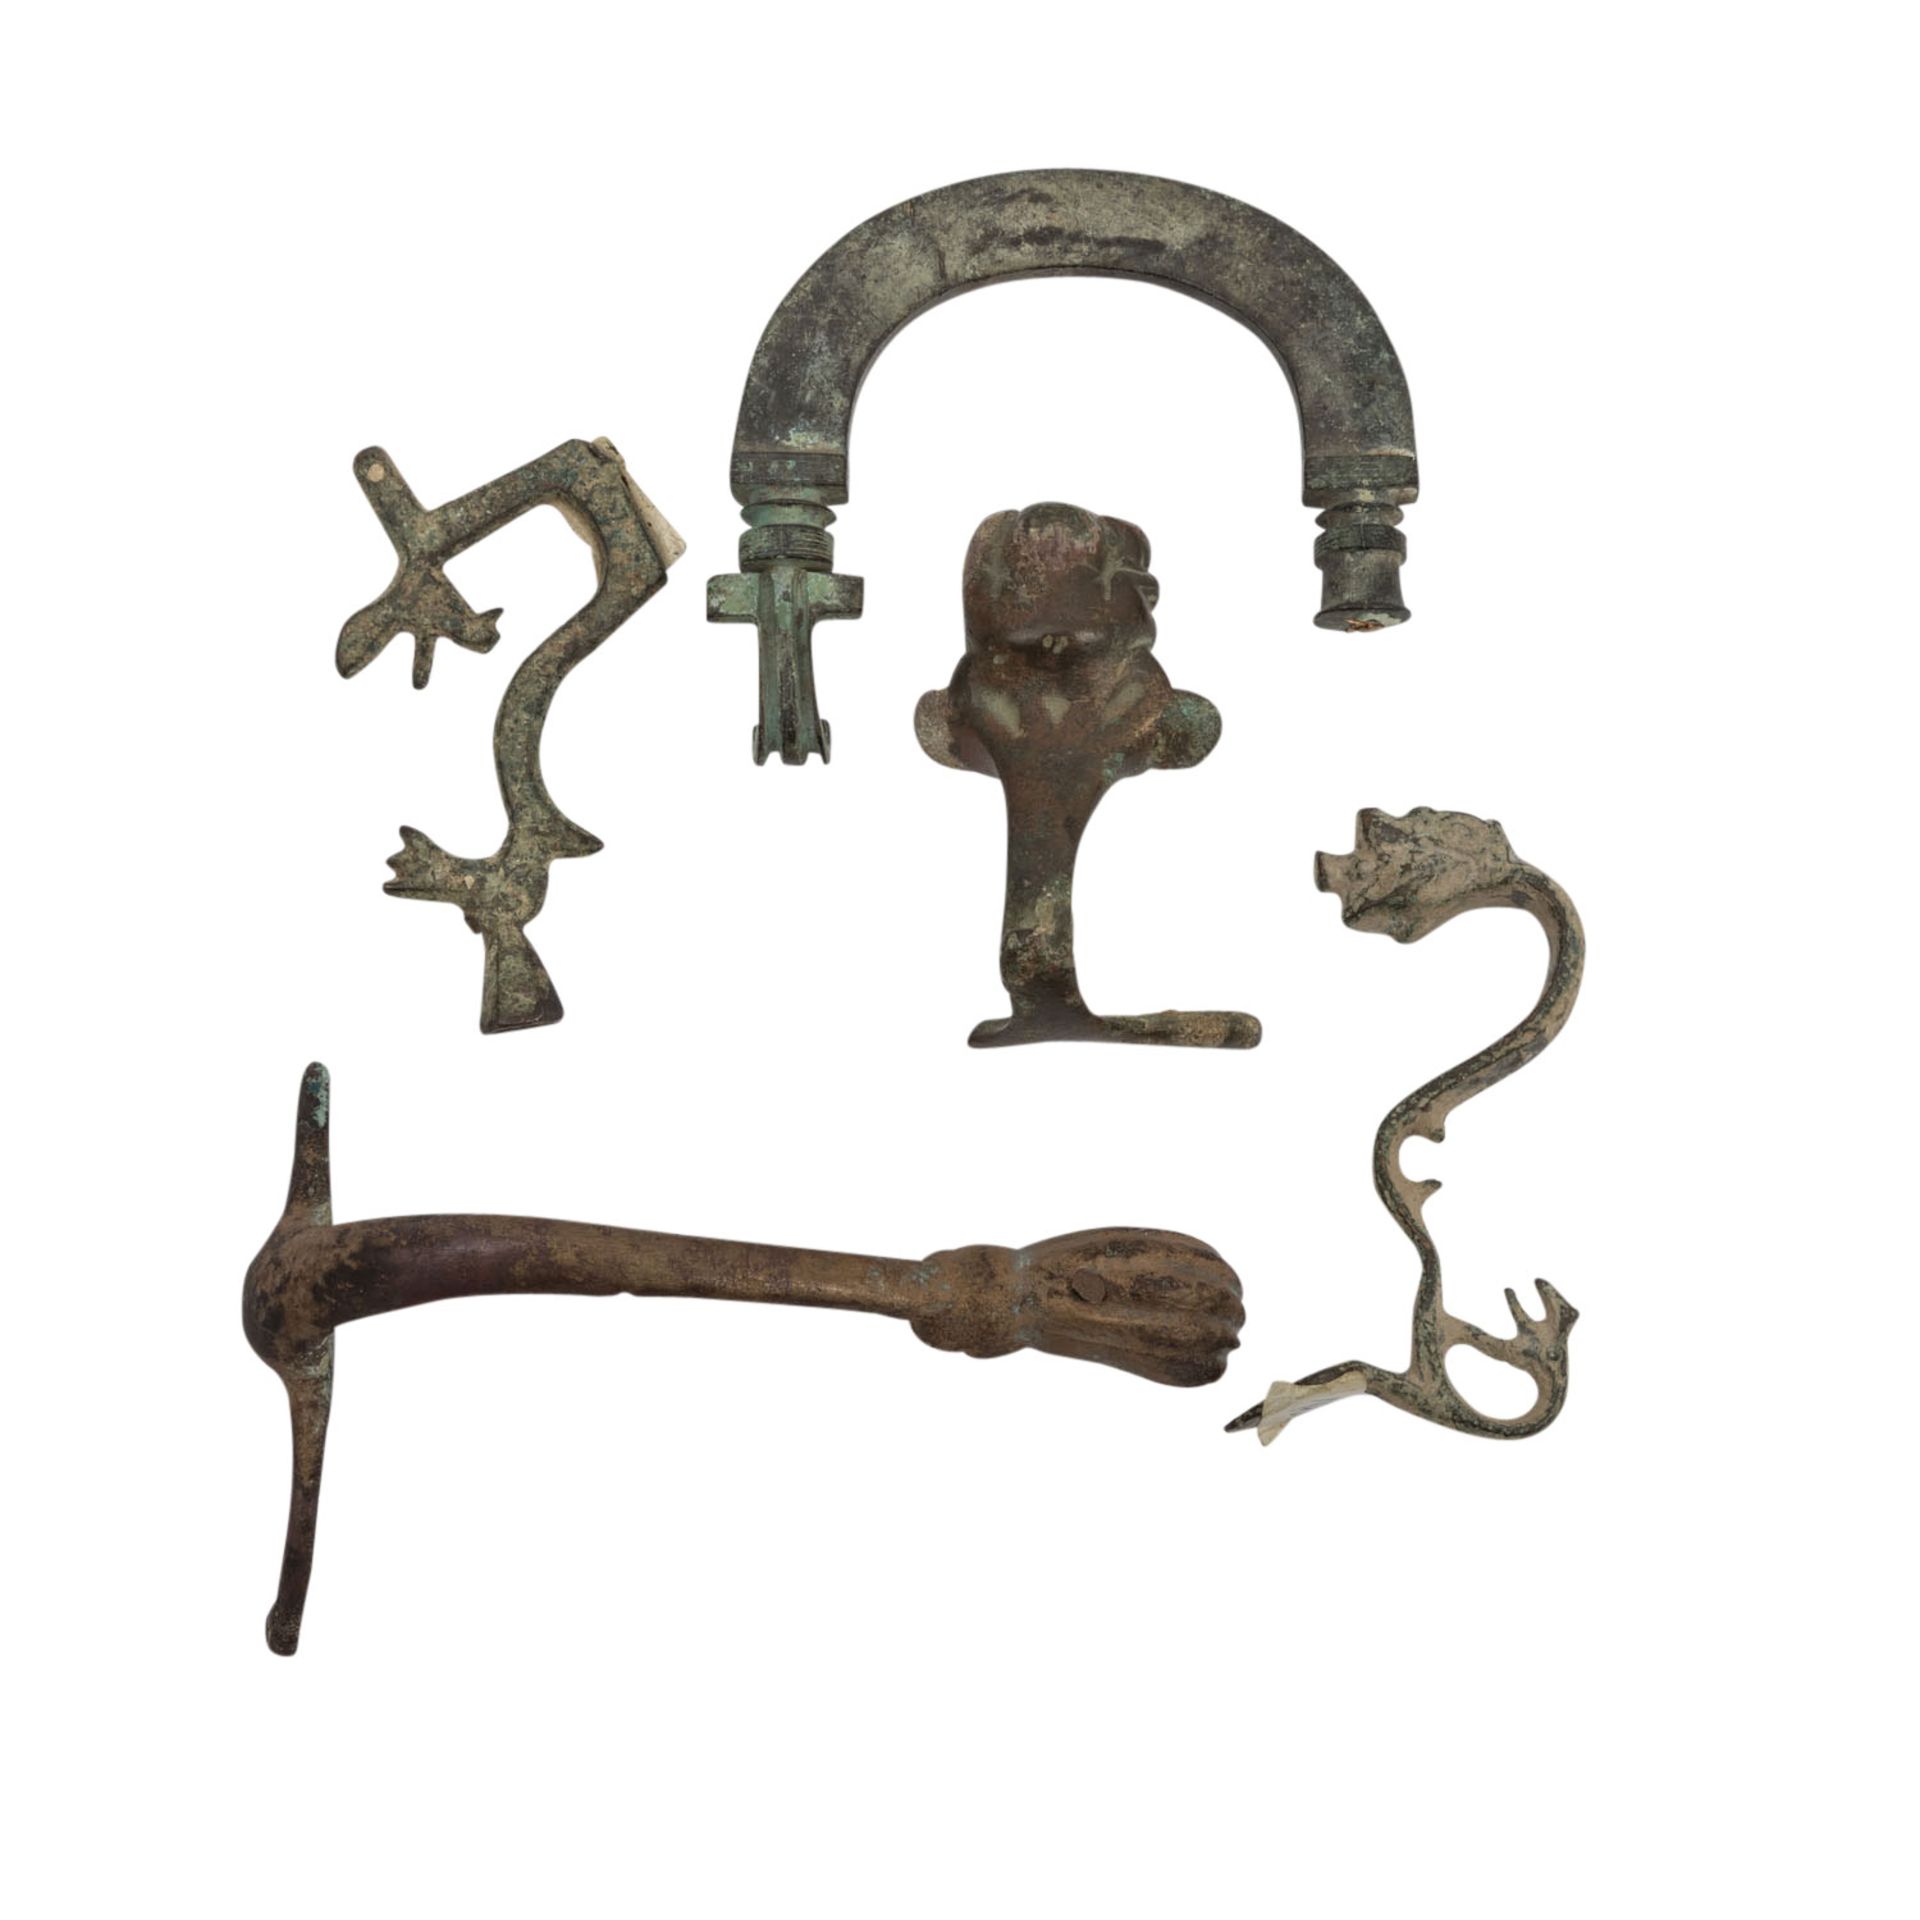 Antike Fundgrube mit Artefakten aus Stein, Bein, Glas und Bronze - - Bild 6 aus 11